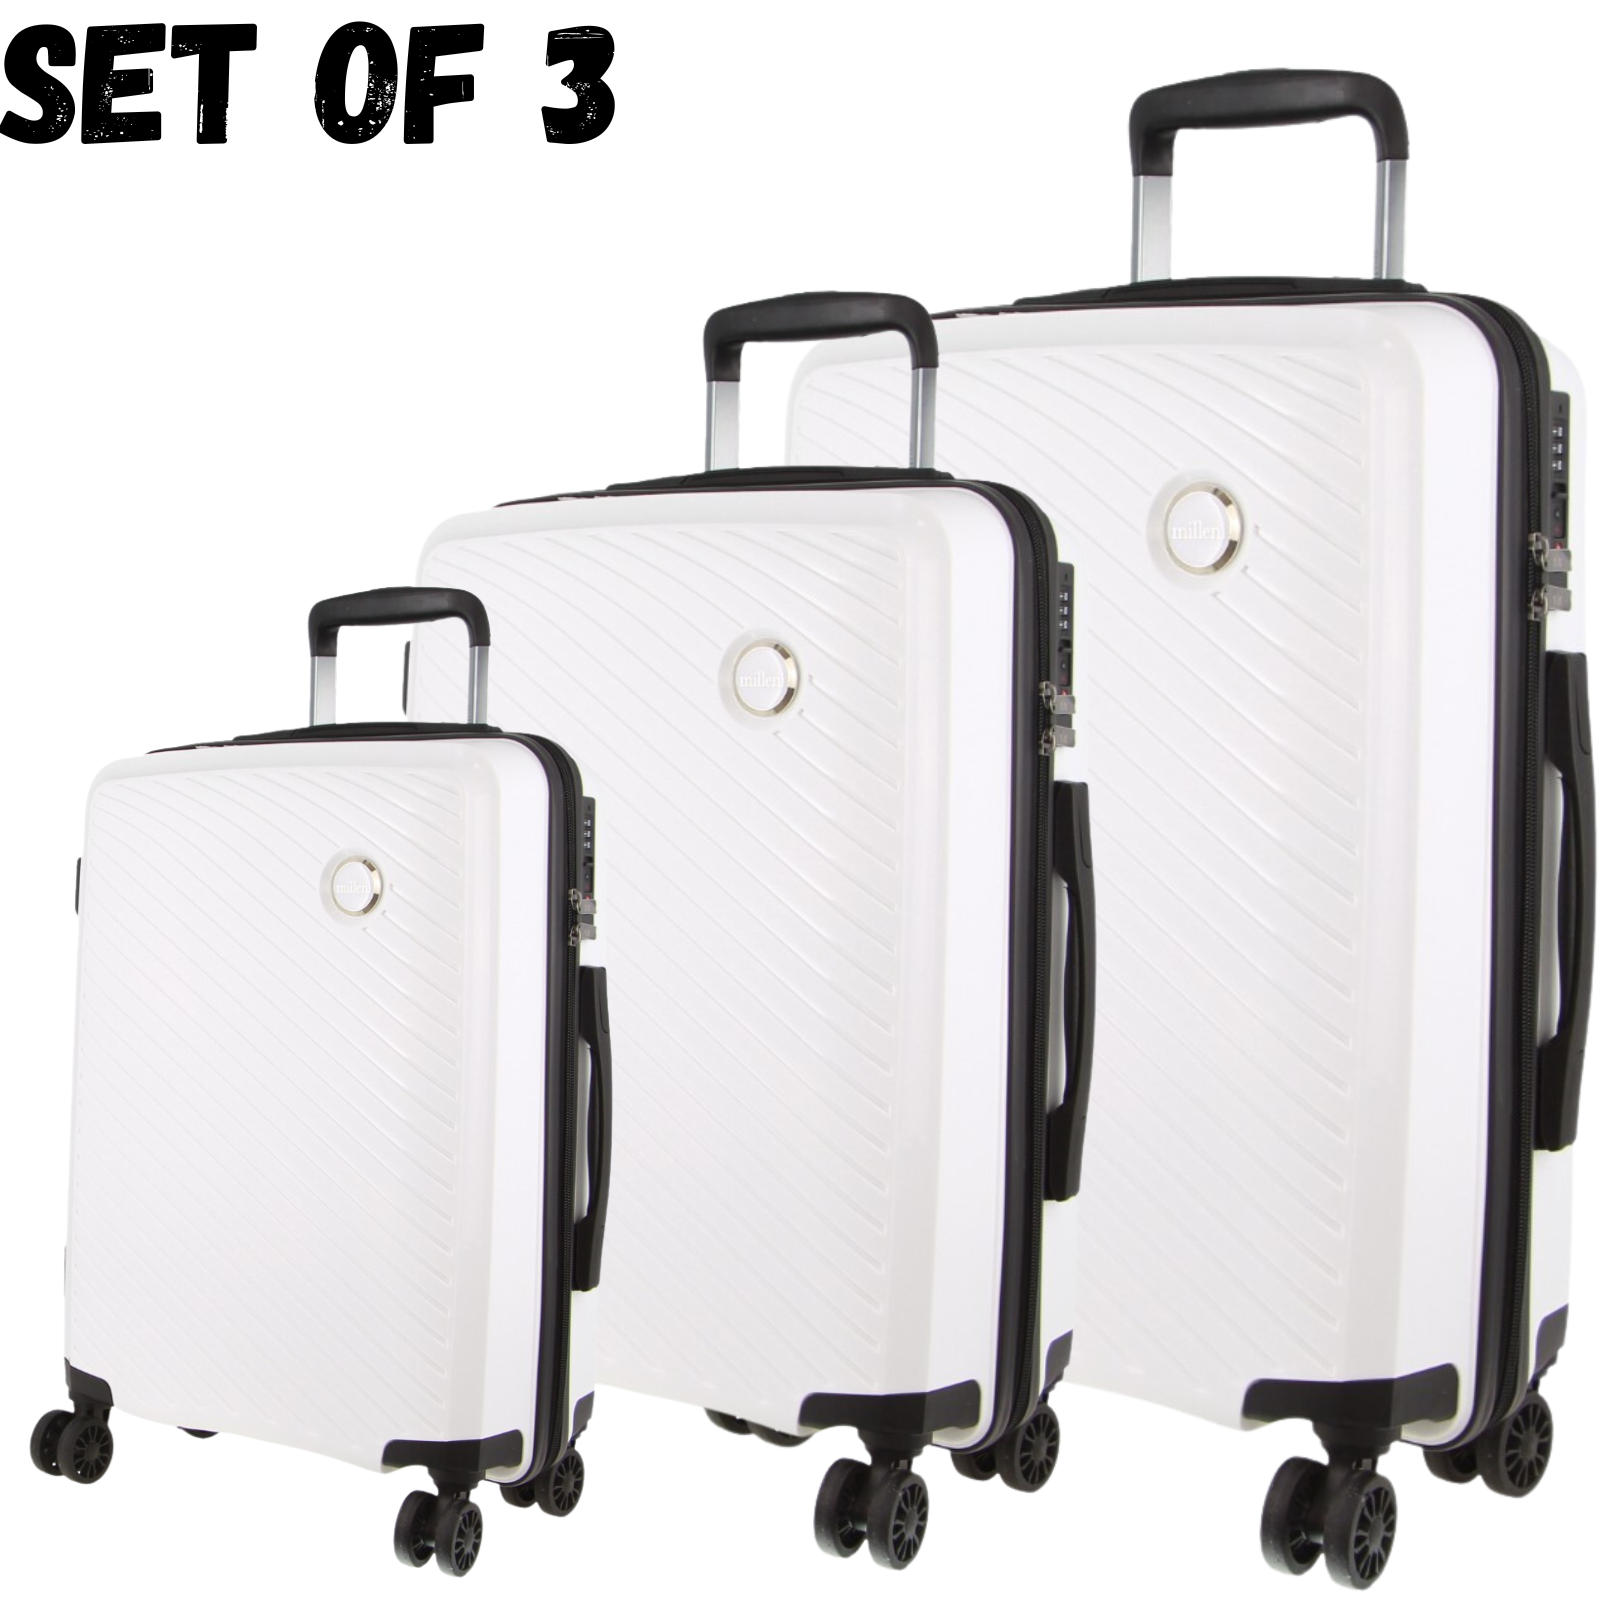 Milleni Hardshell 3-Piece Luggage Bag Travel Carry On Suitcase - White